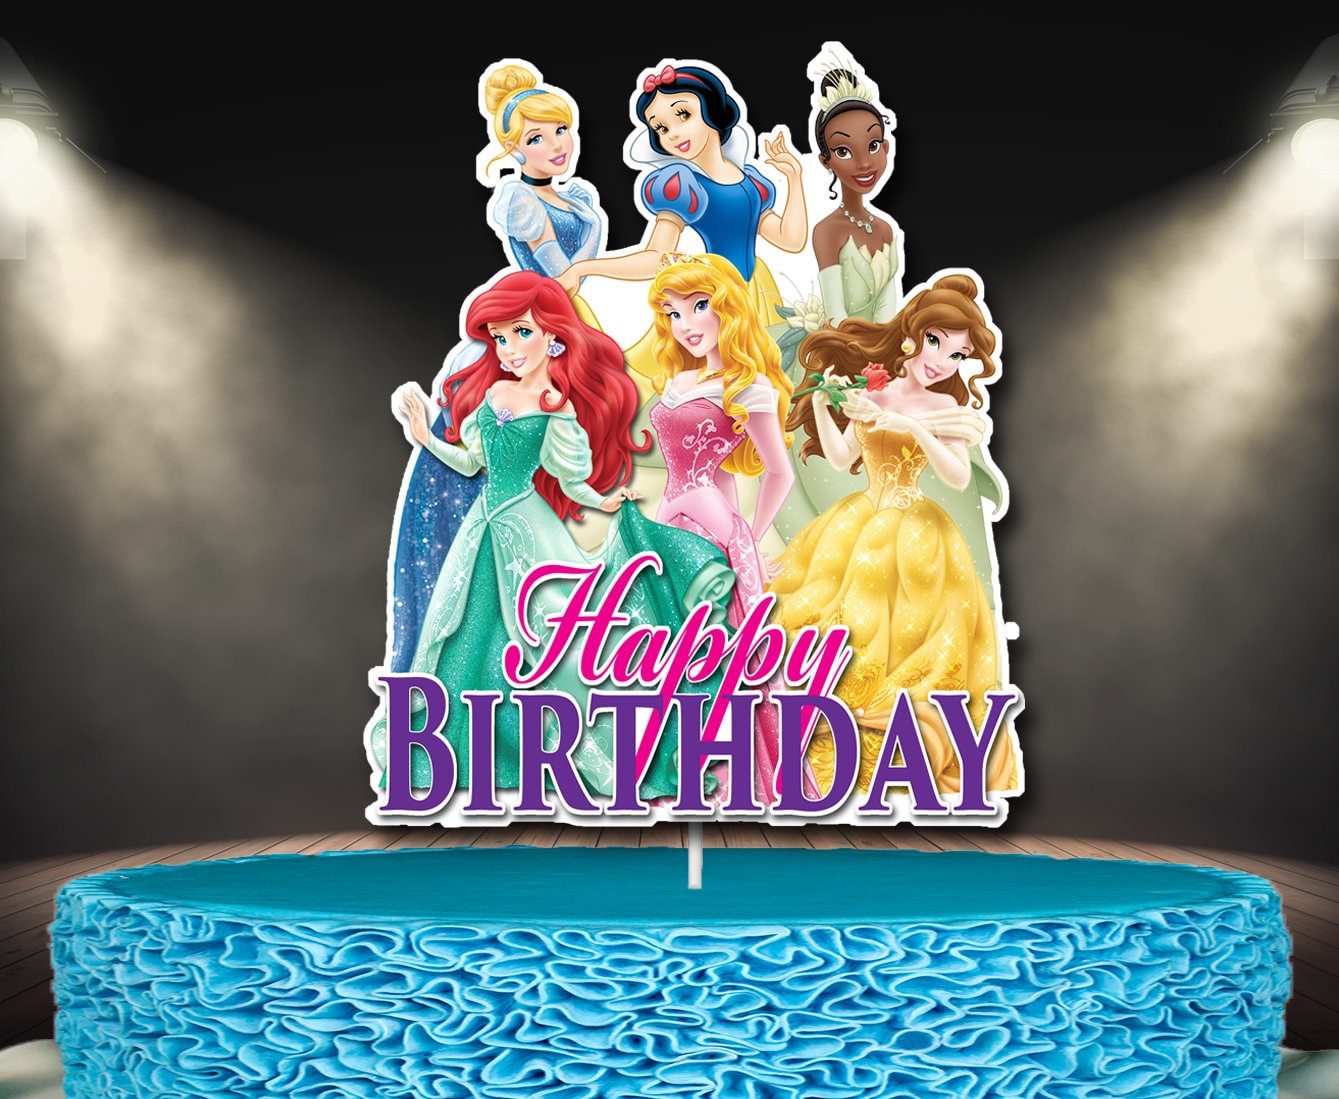 12 Disney Princess Cakes for Making Birthday Dreams Come True | CafeMom.com